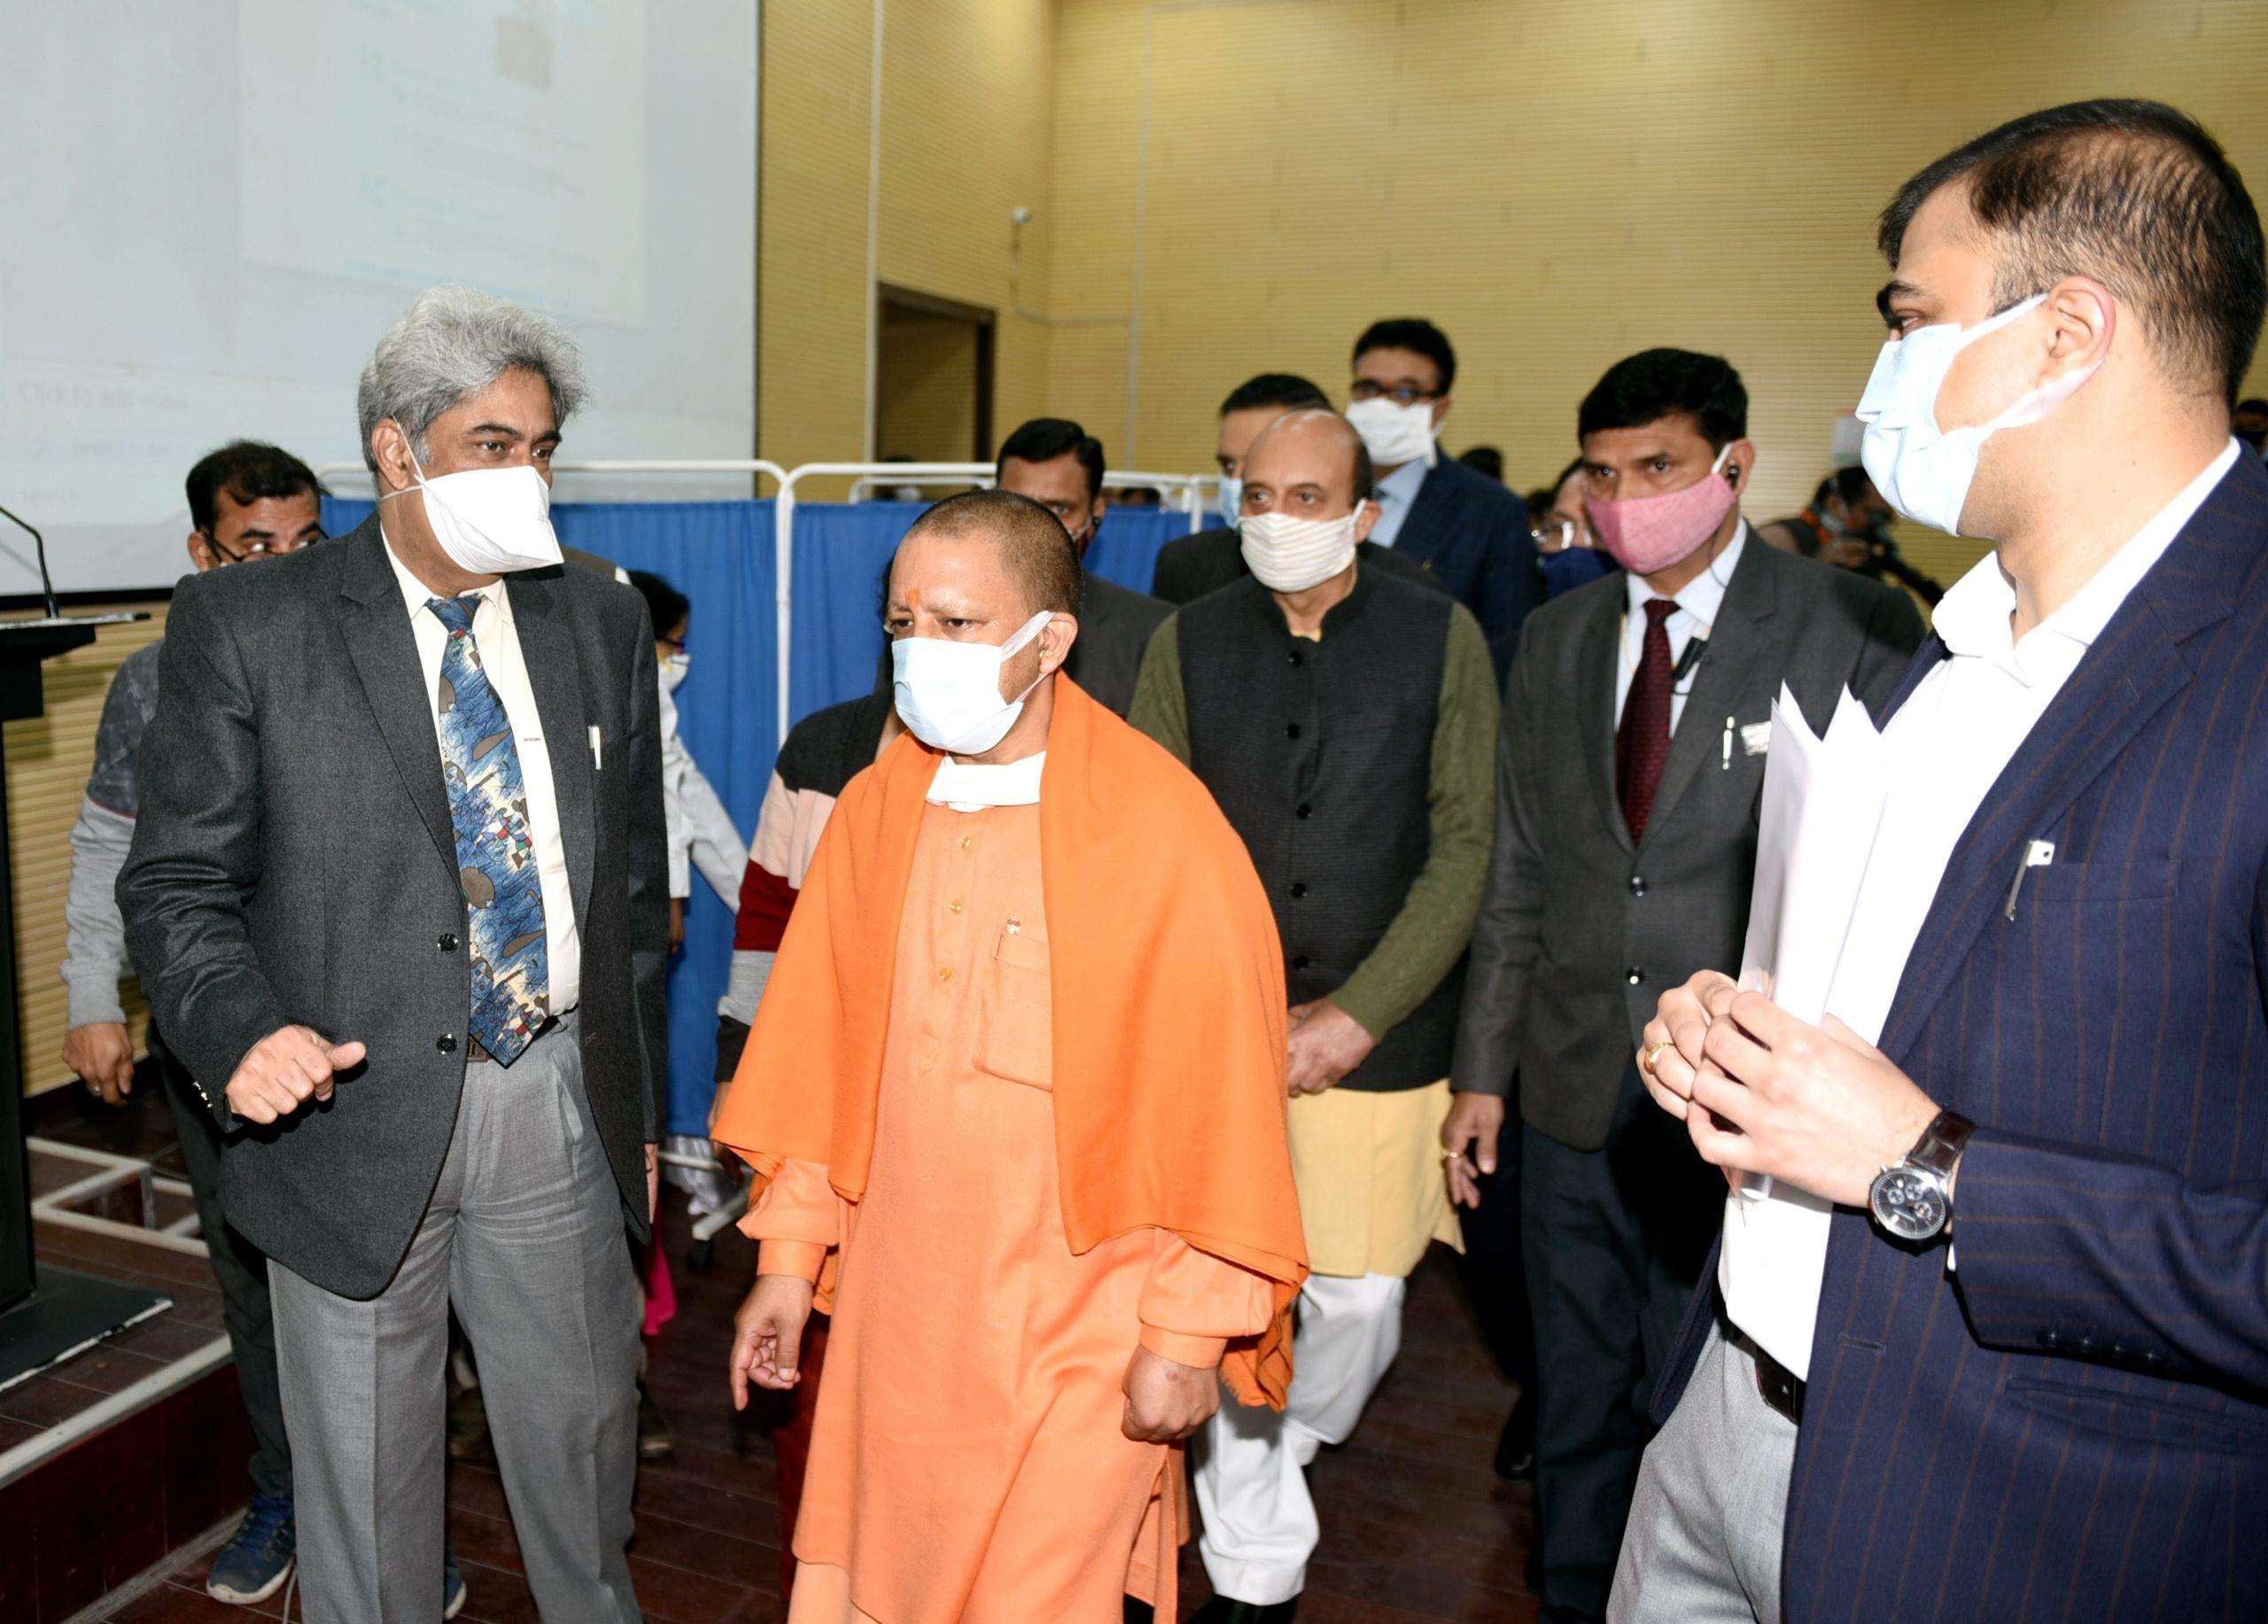 मुख्यमंत्री ने डा0 राम मनोहर लोहिया आयुर्विज्ञान संस्थान में कोविड वैक्सीनेशन का निरीक्षण किया